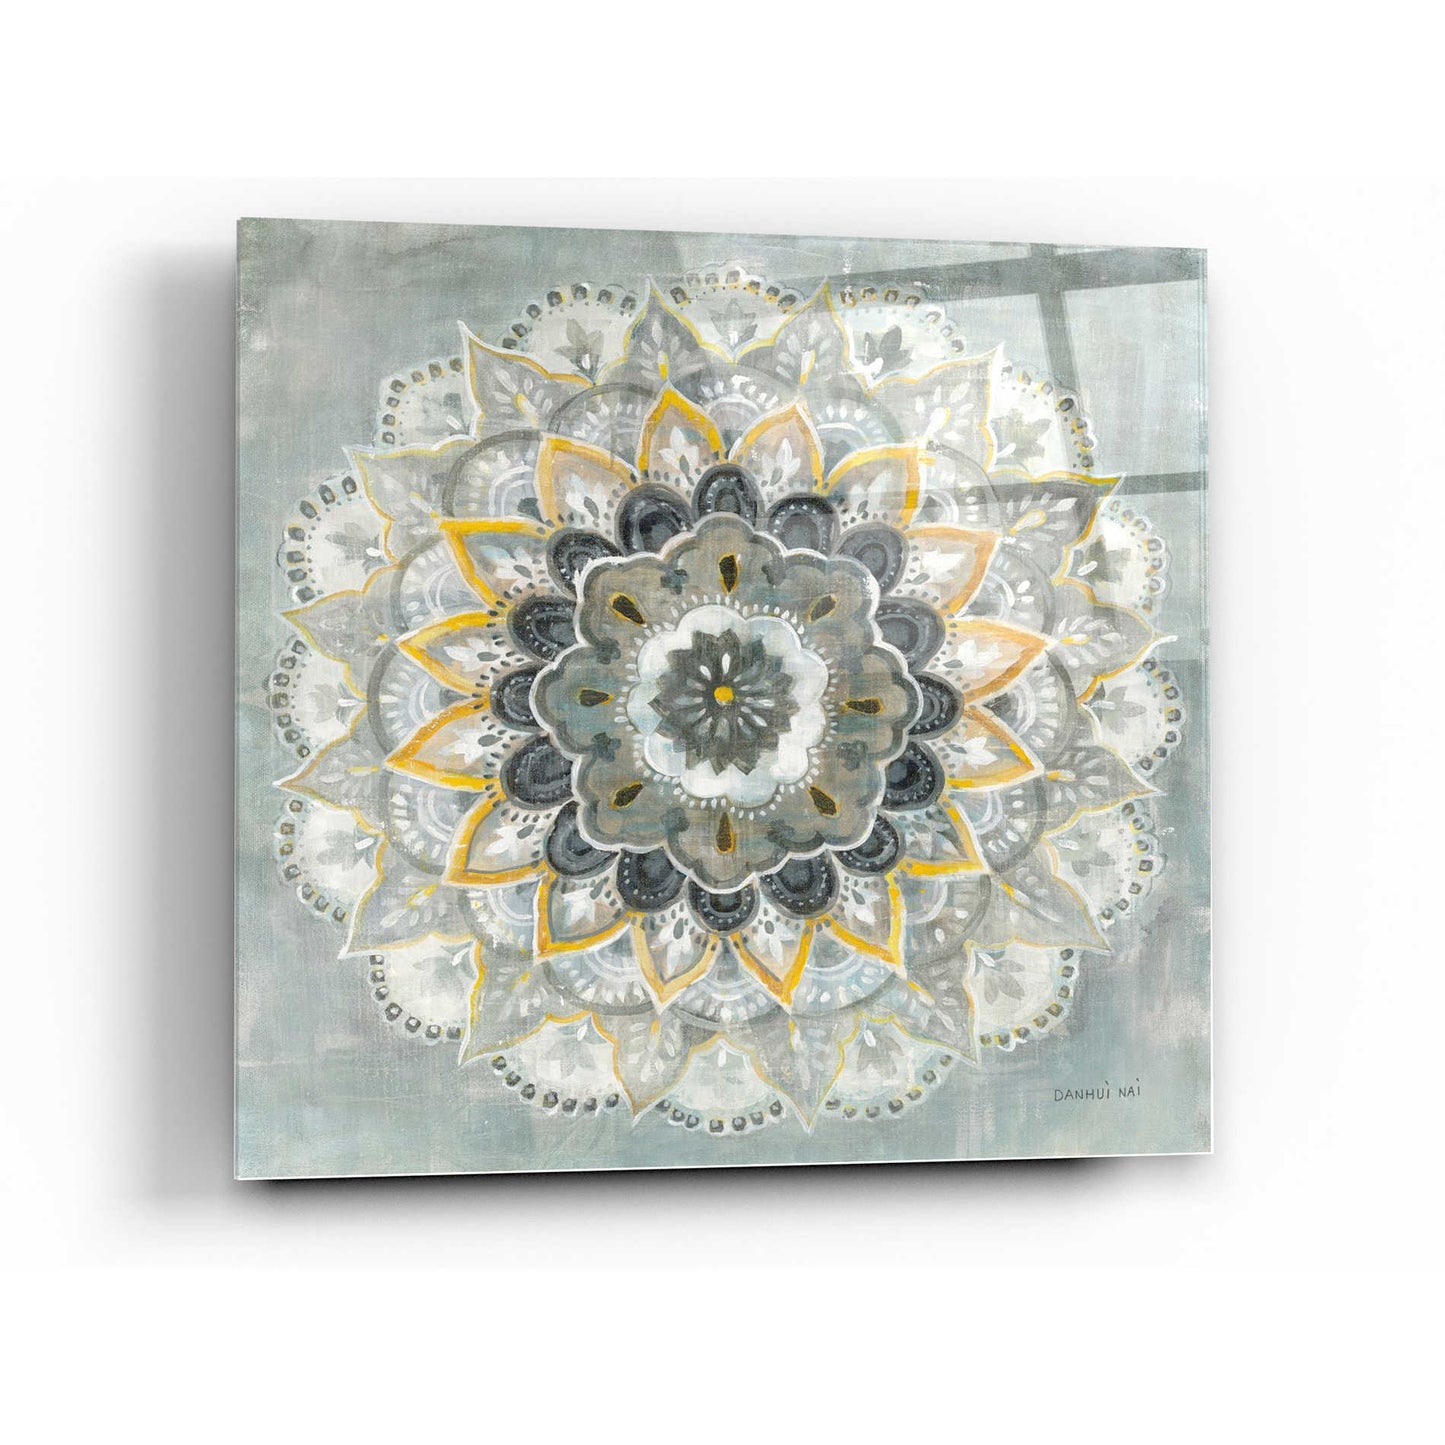 Epic Art 'Sunburst' by Danhui Nai, Acrylic Glass Wall Art,36x36